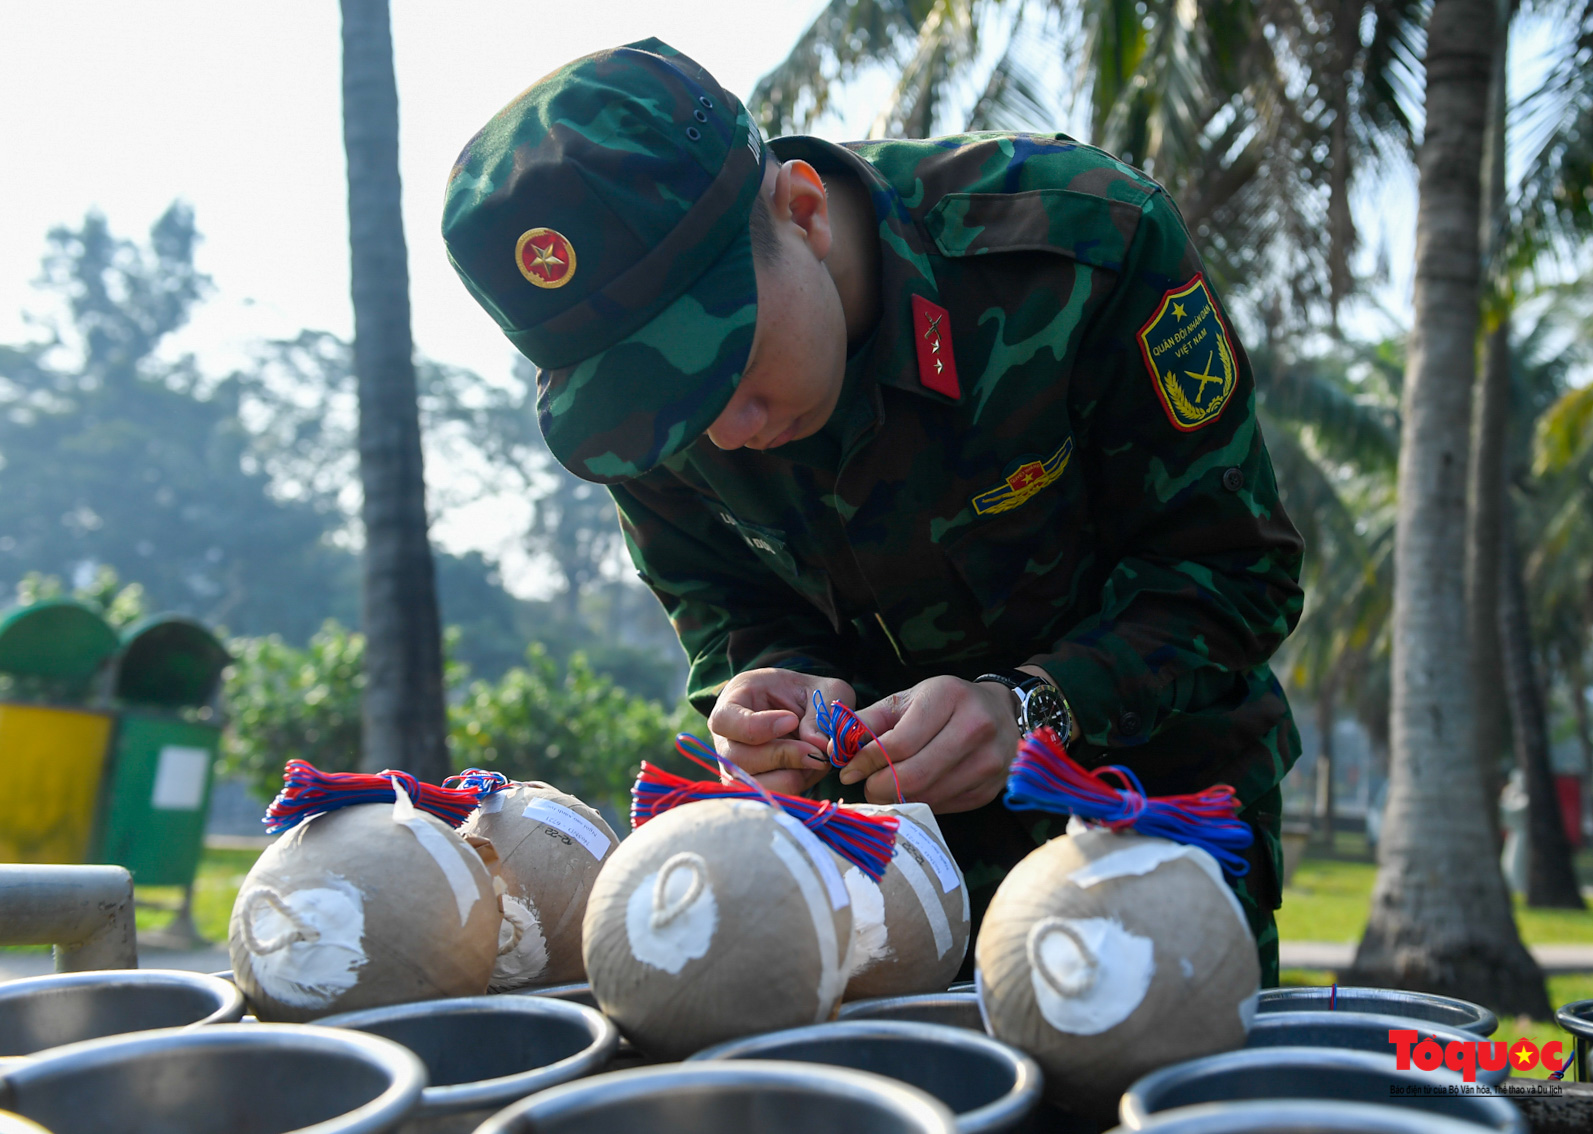 Hà Nội: Cận cảnh lắp đặt trận địa pháo hoa phục vụ đêm Giao thừa - Ảnh 7.